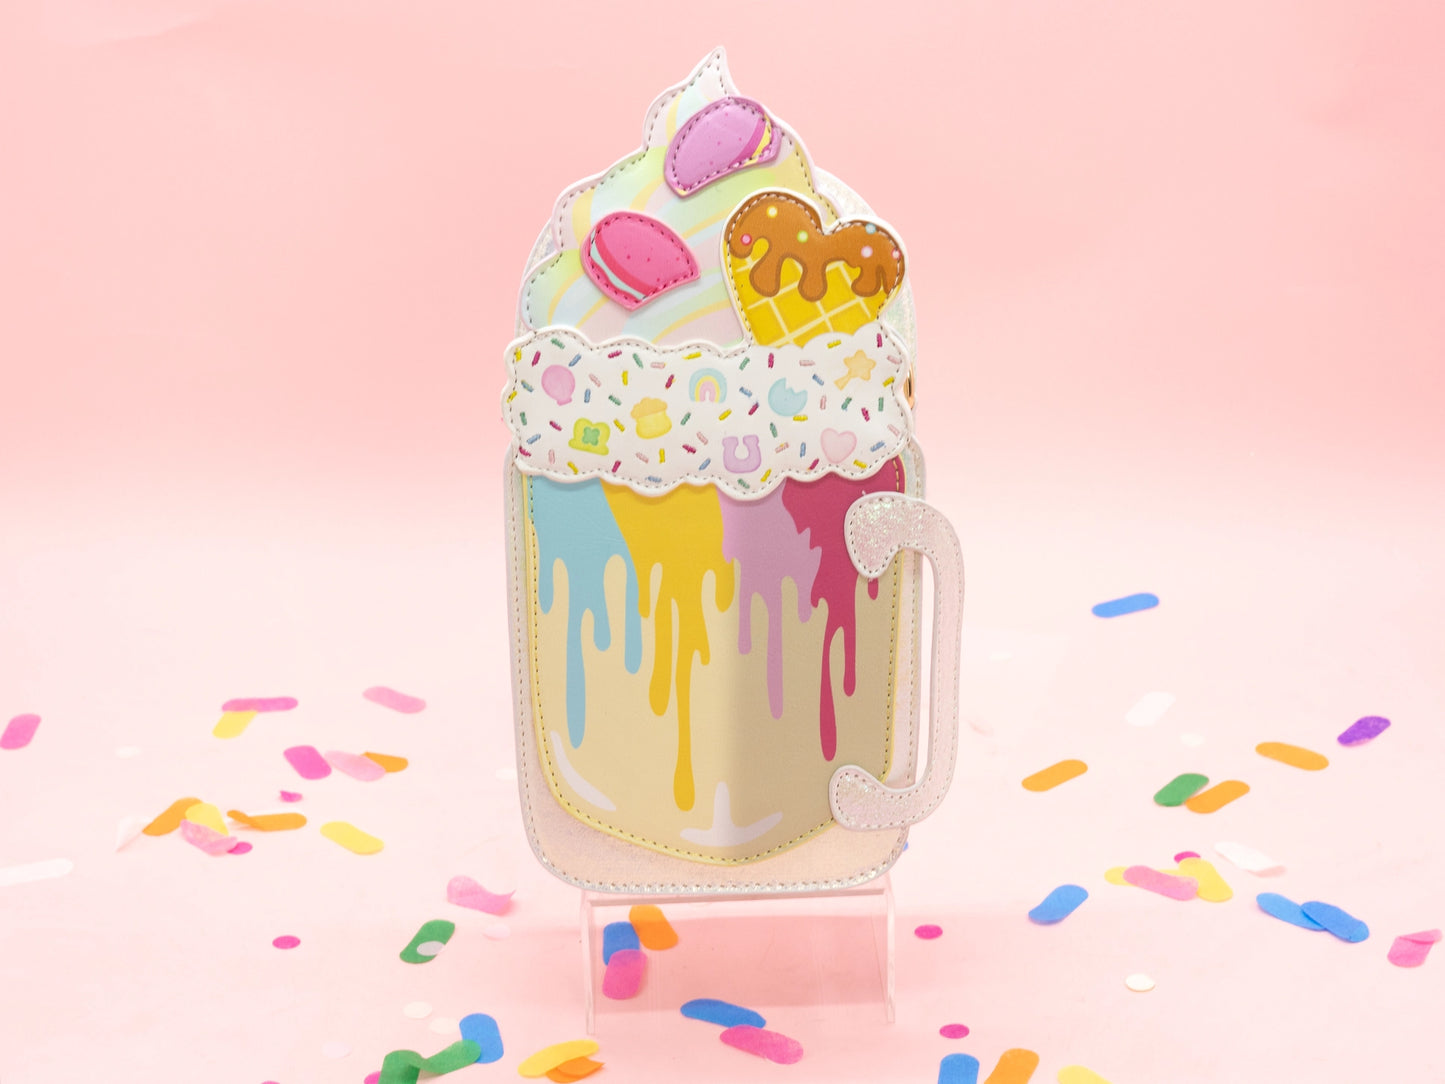 Milkshake Mug Handbag - Rainbow Sprinkles